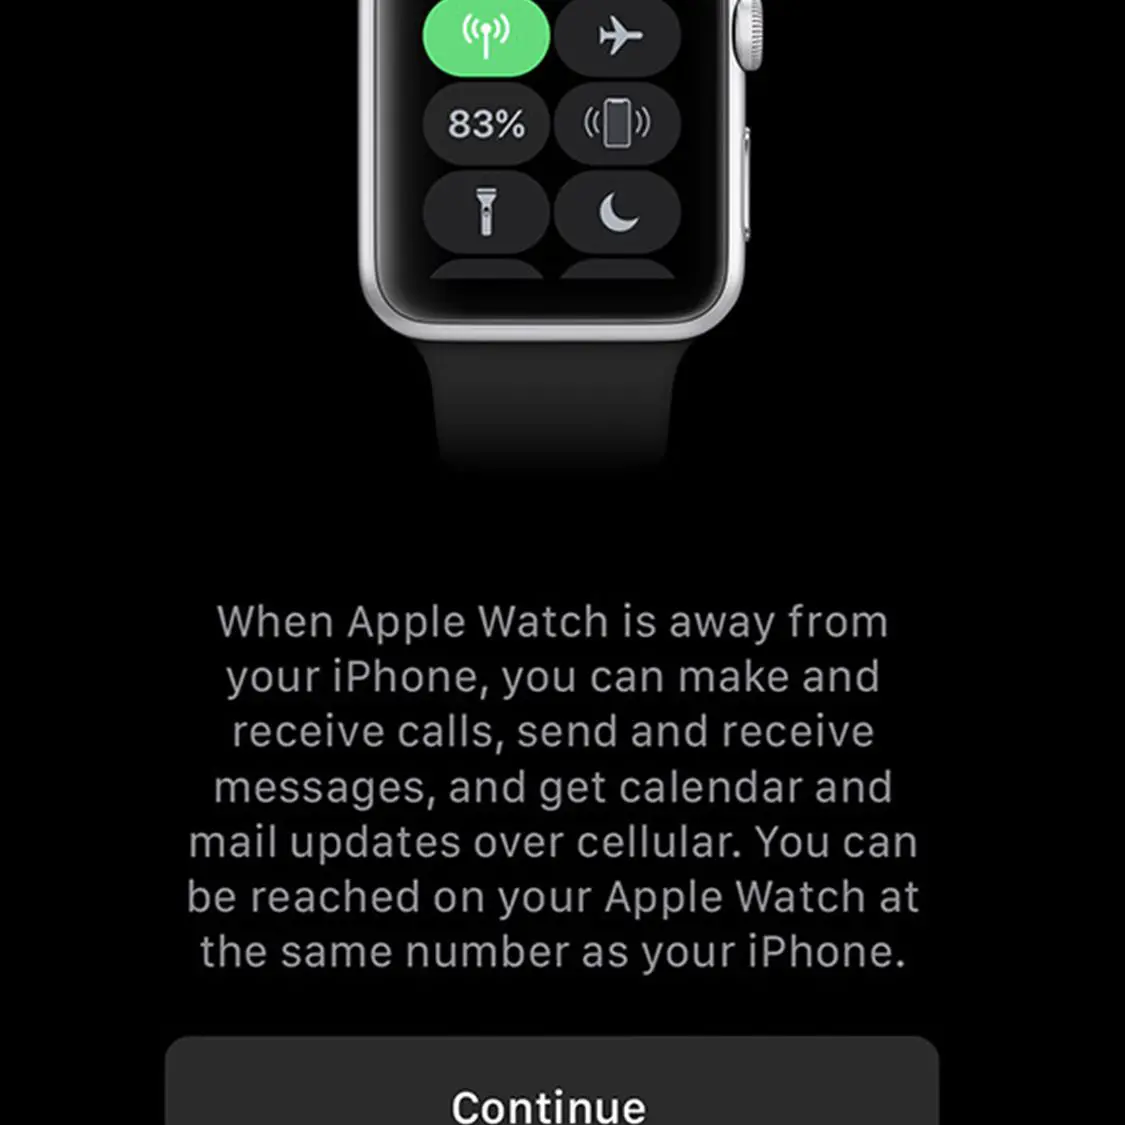 Uma tela mostrando o serviço de celular para o Apple Watch está configurada